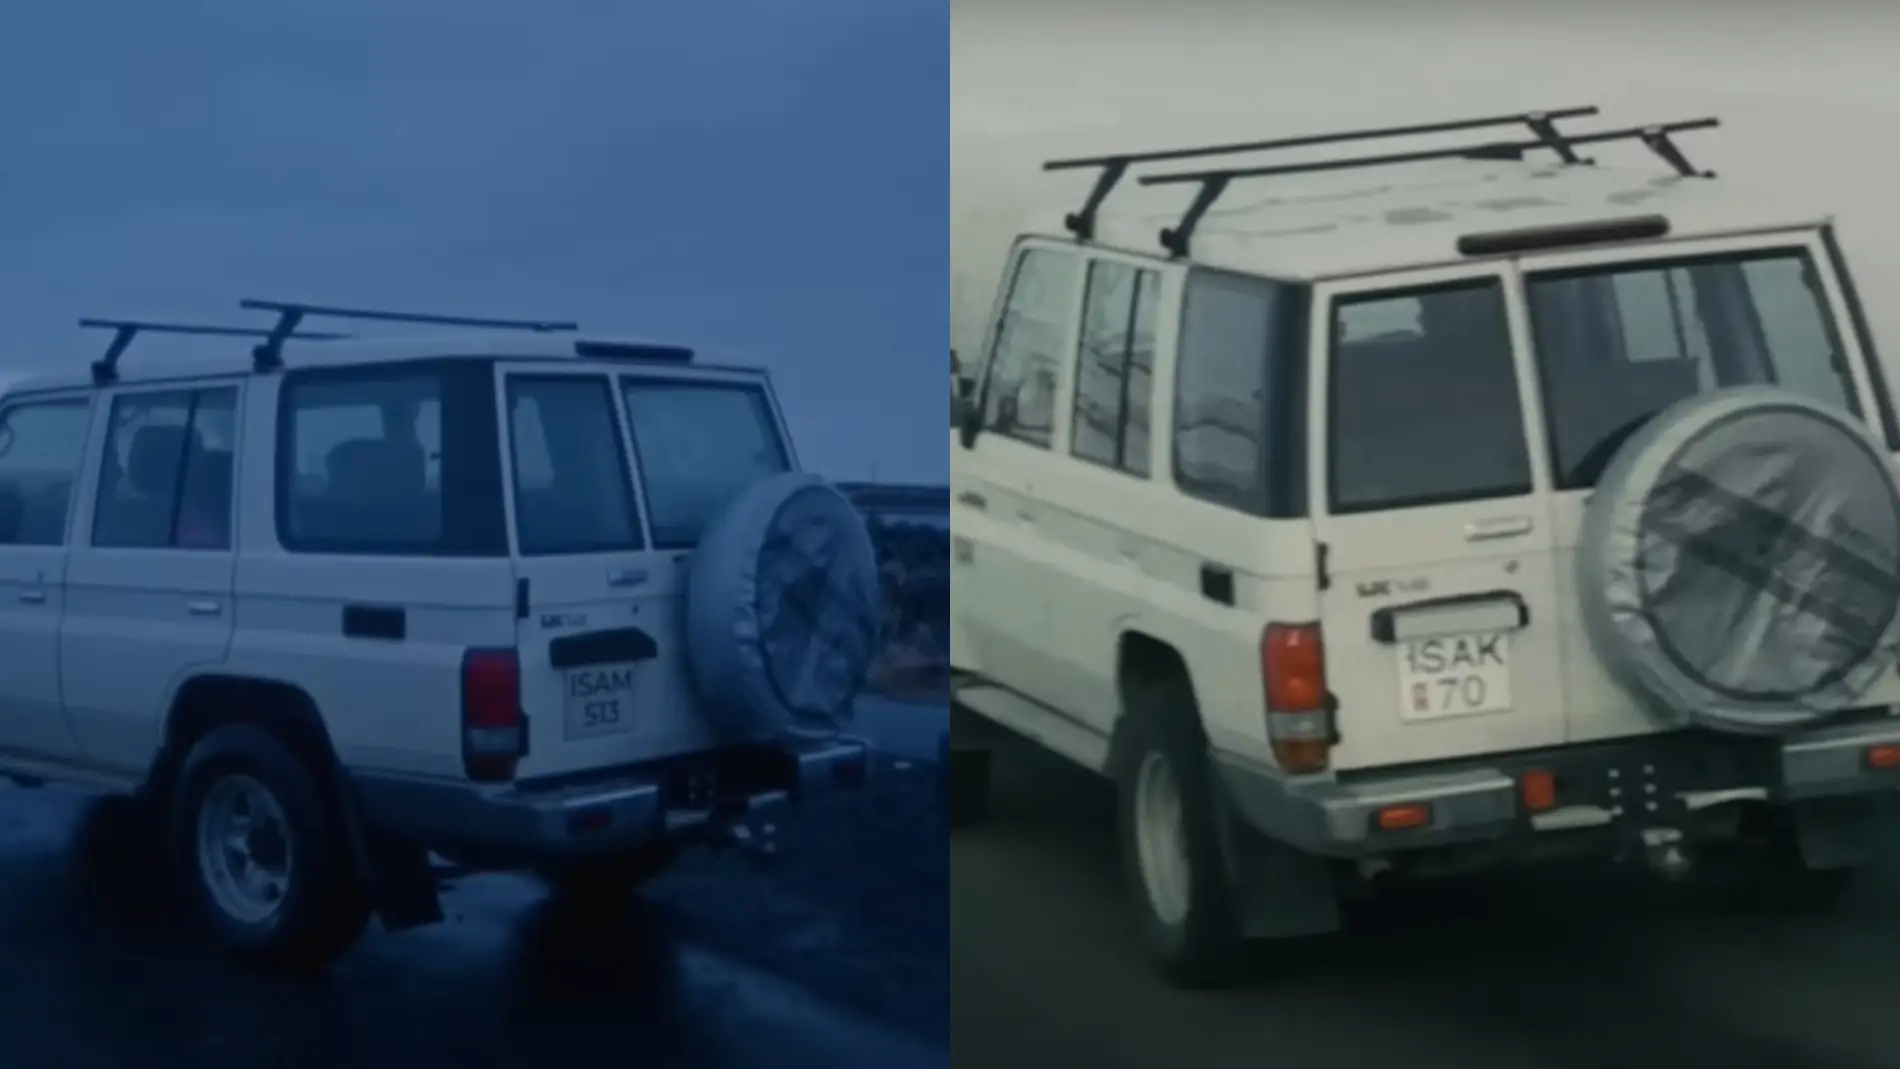 Matrículas de los coches en el video de Akureyri